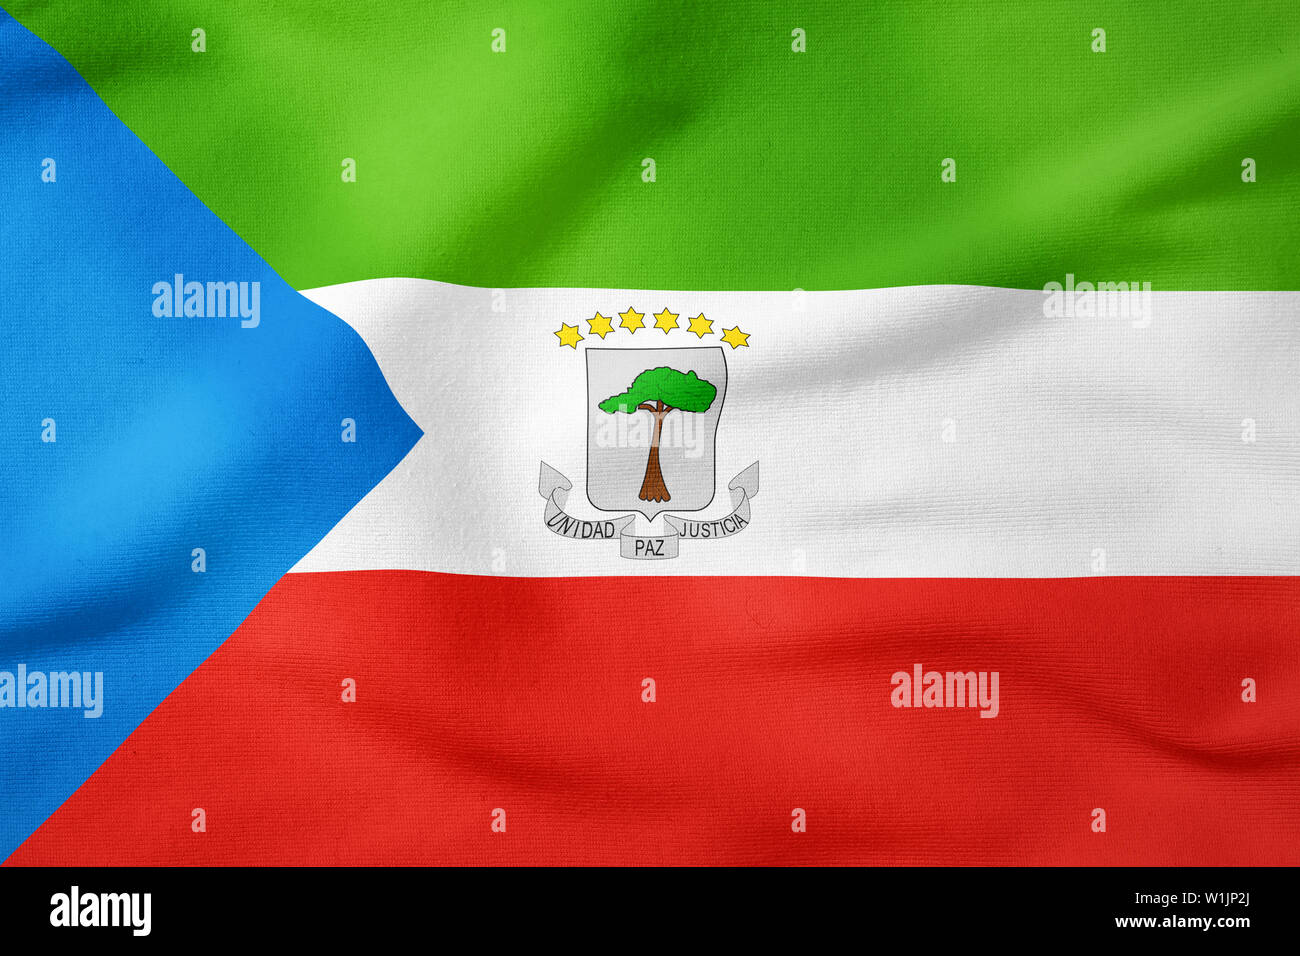 National Flag of Equatorial Guinea - Rectangular Shape patriotic symbol Stock Photo